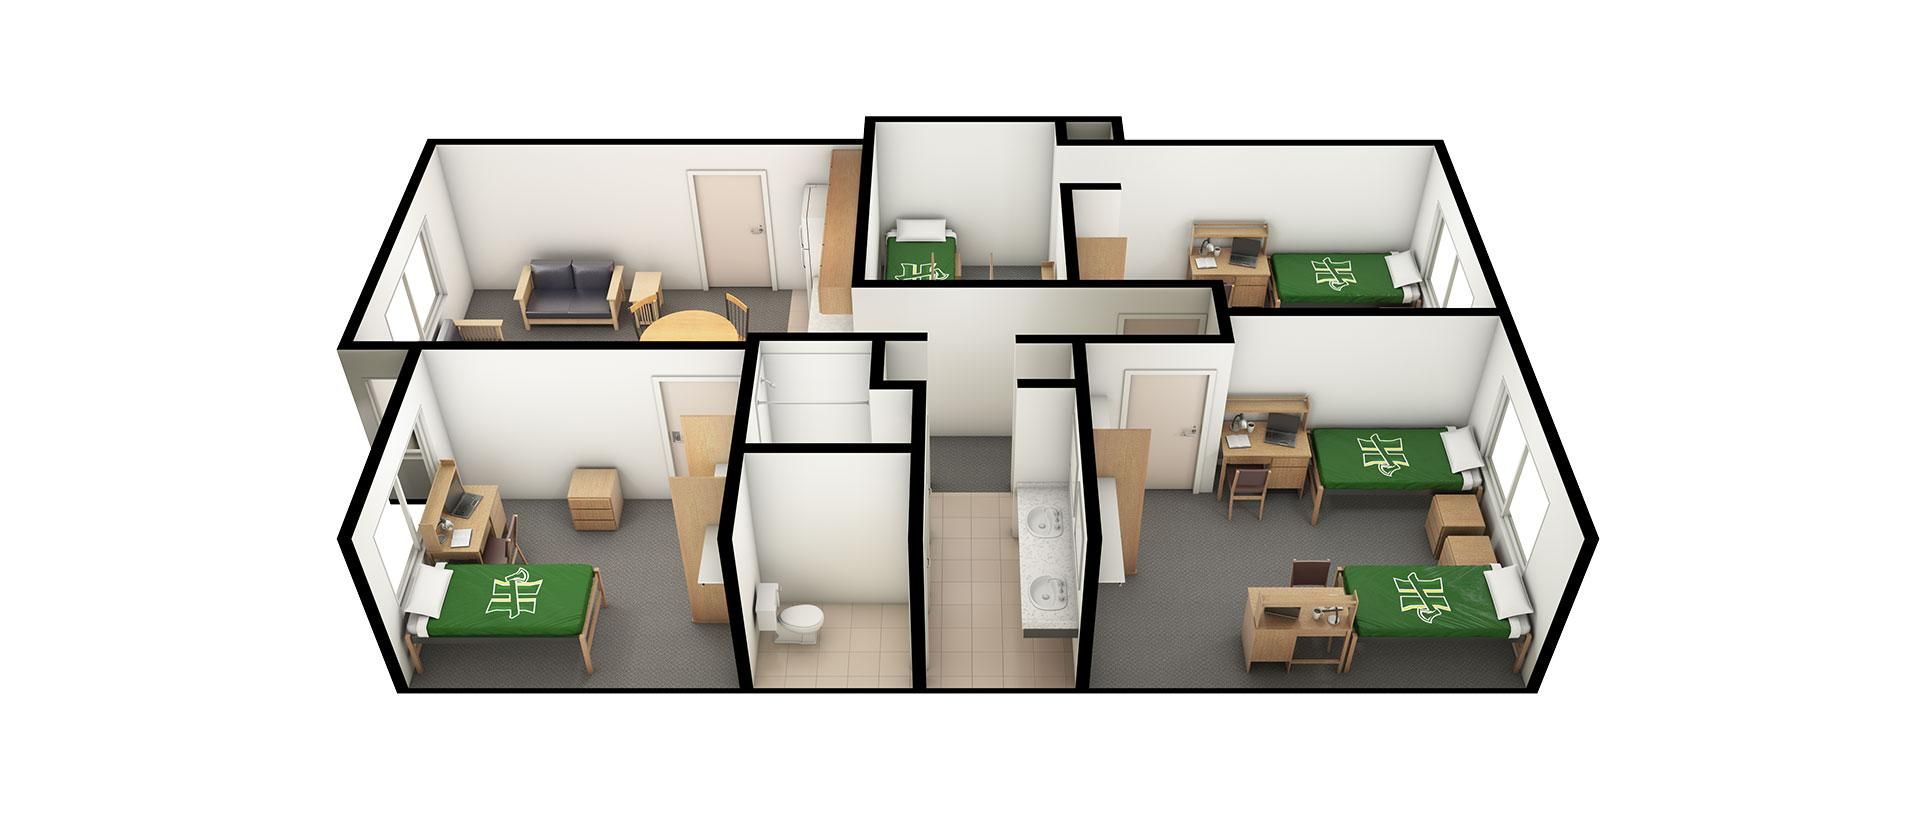 Creekview Suite Floor Plan